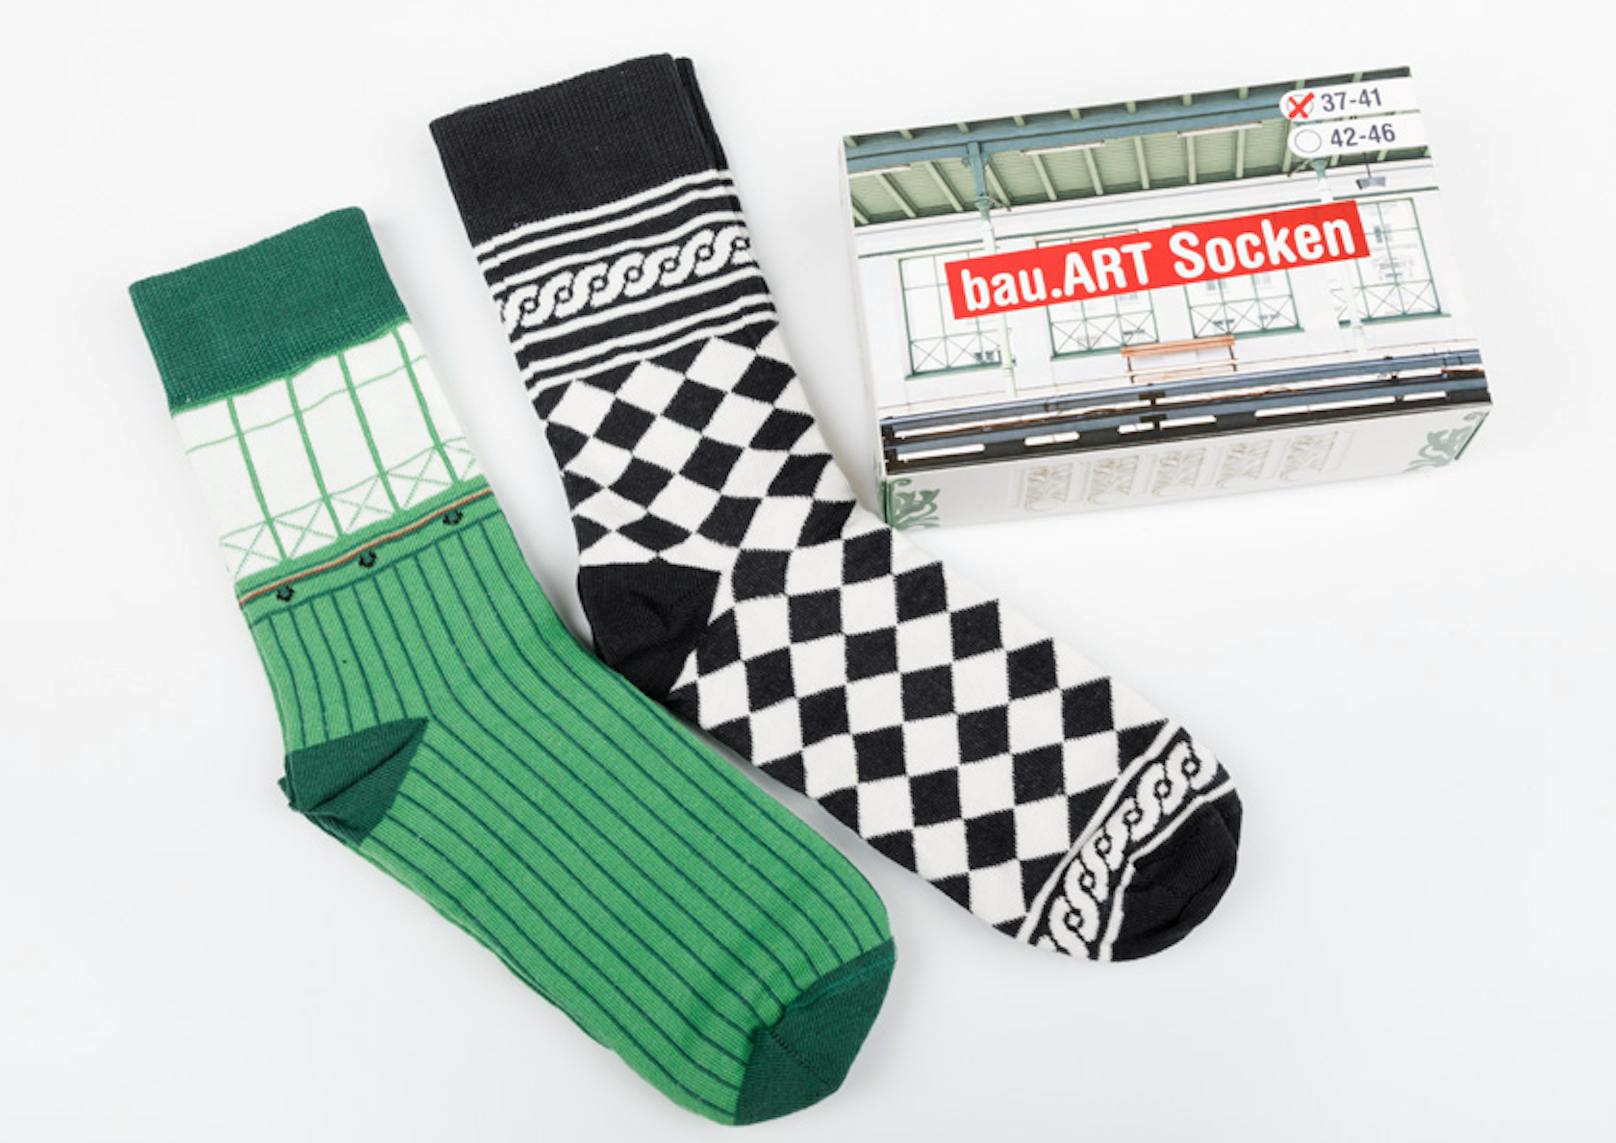 Die Socken aus der bau.ART-Kollektion sind an die Öffi-Stationen im Otto-Wagner-Design angelehnt.&nbsp;